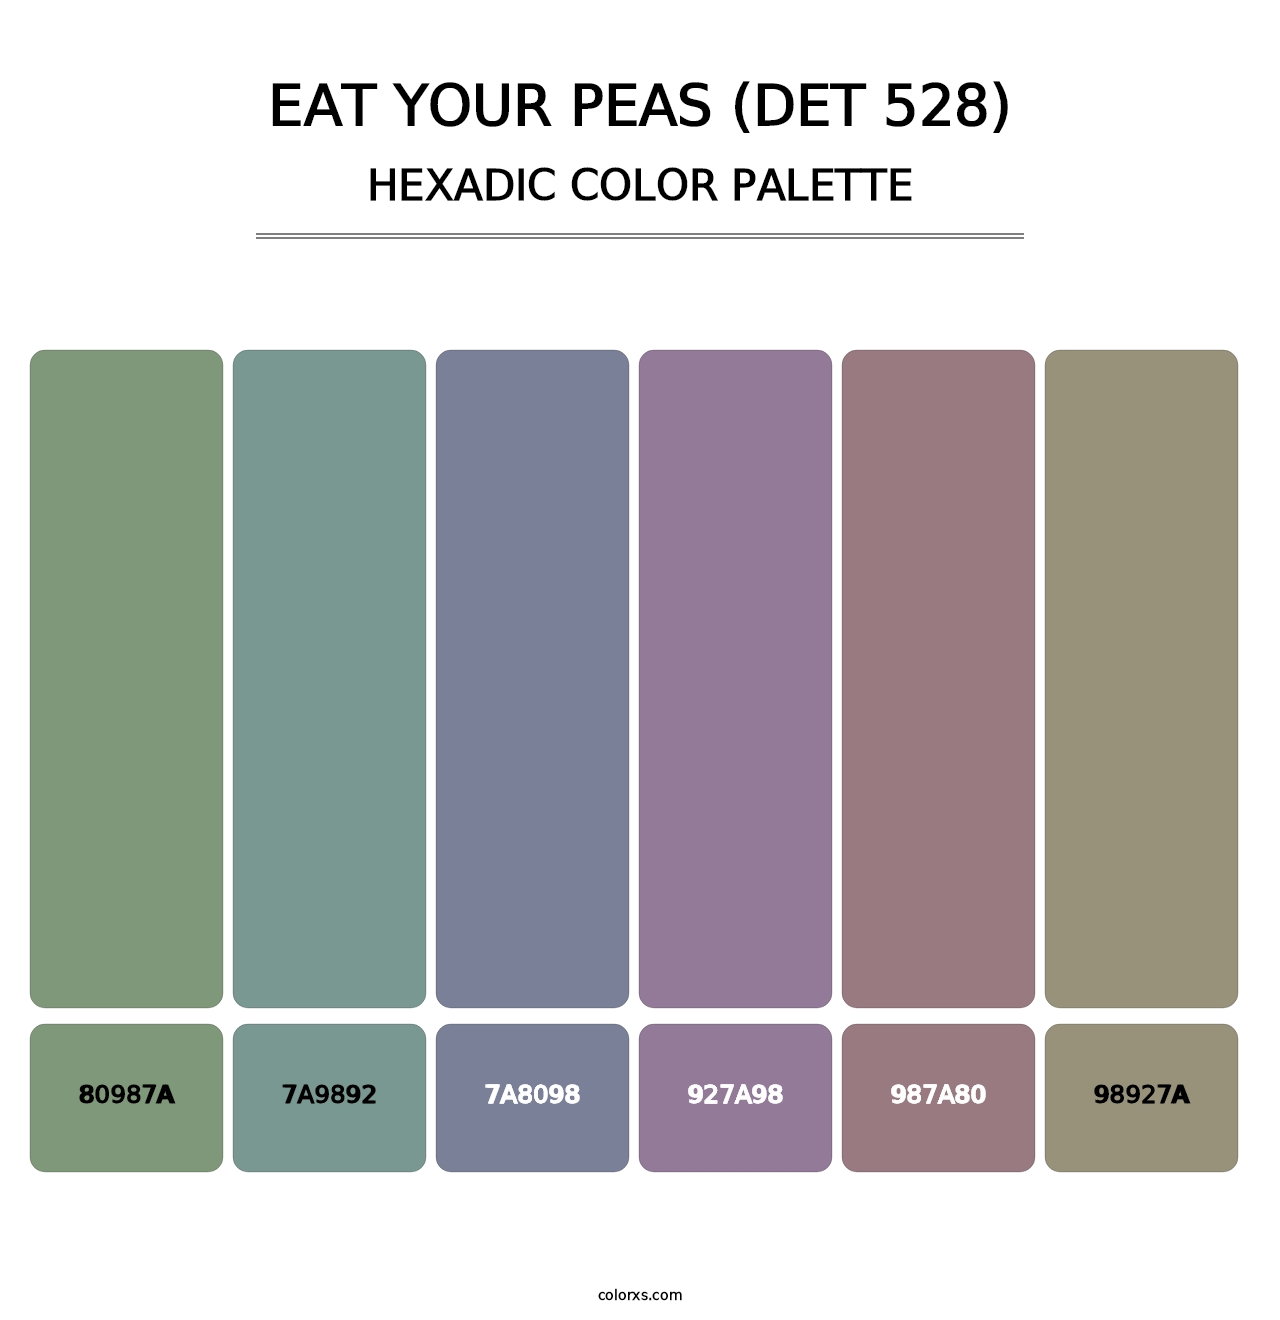 Eat Your Peas (DET 528) - Hexadic Color Palette